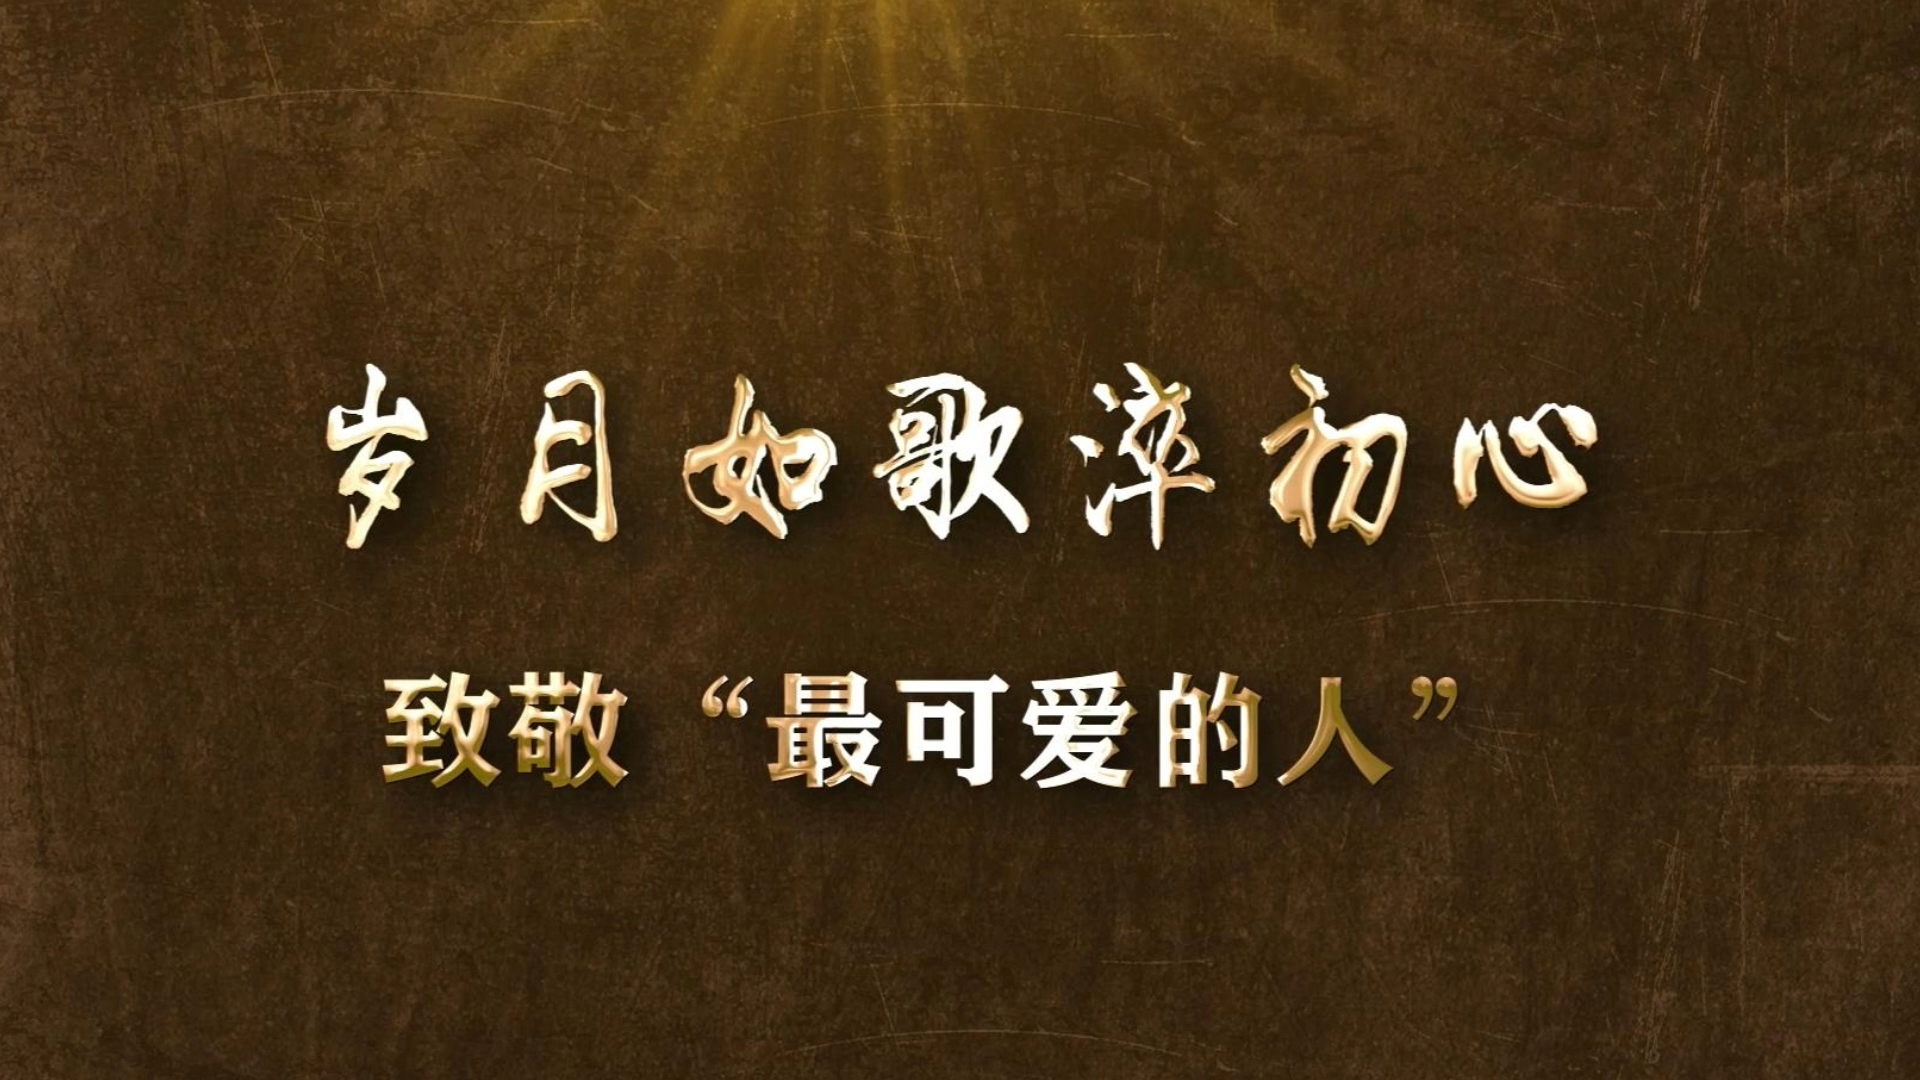 《岁月如歌淬初心——致敬最可爱的人》丨贵州省首届社会主义核心价值观主题微电影(微视频)征集展示活动作品